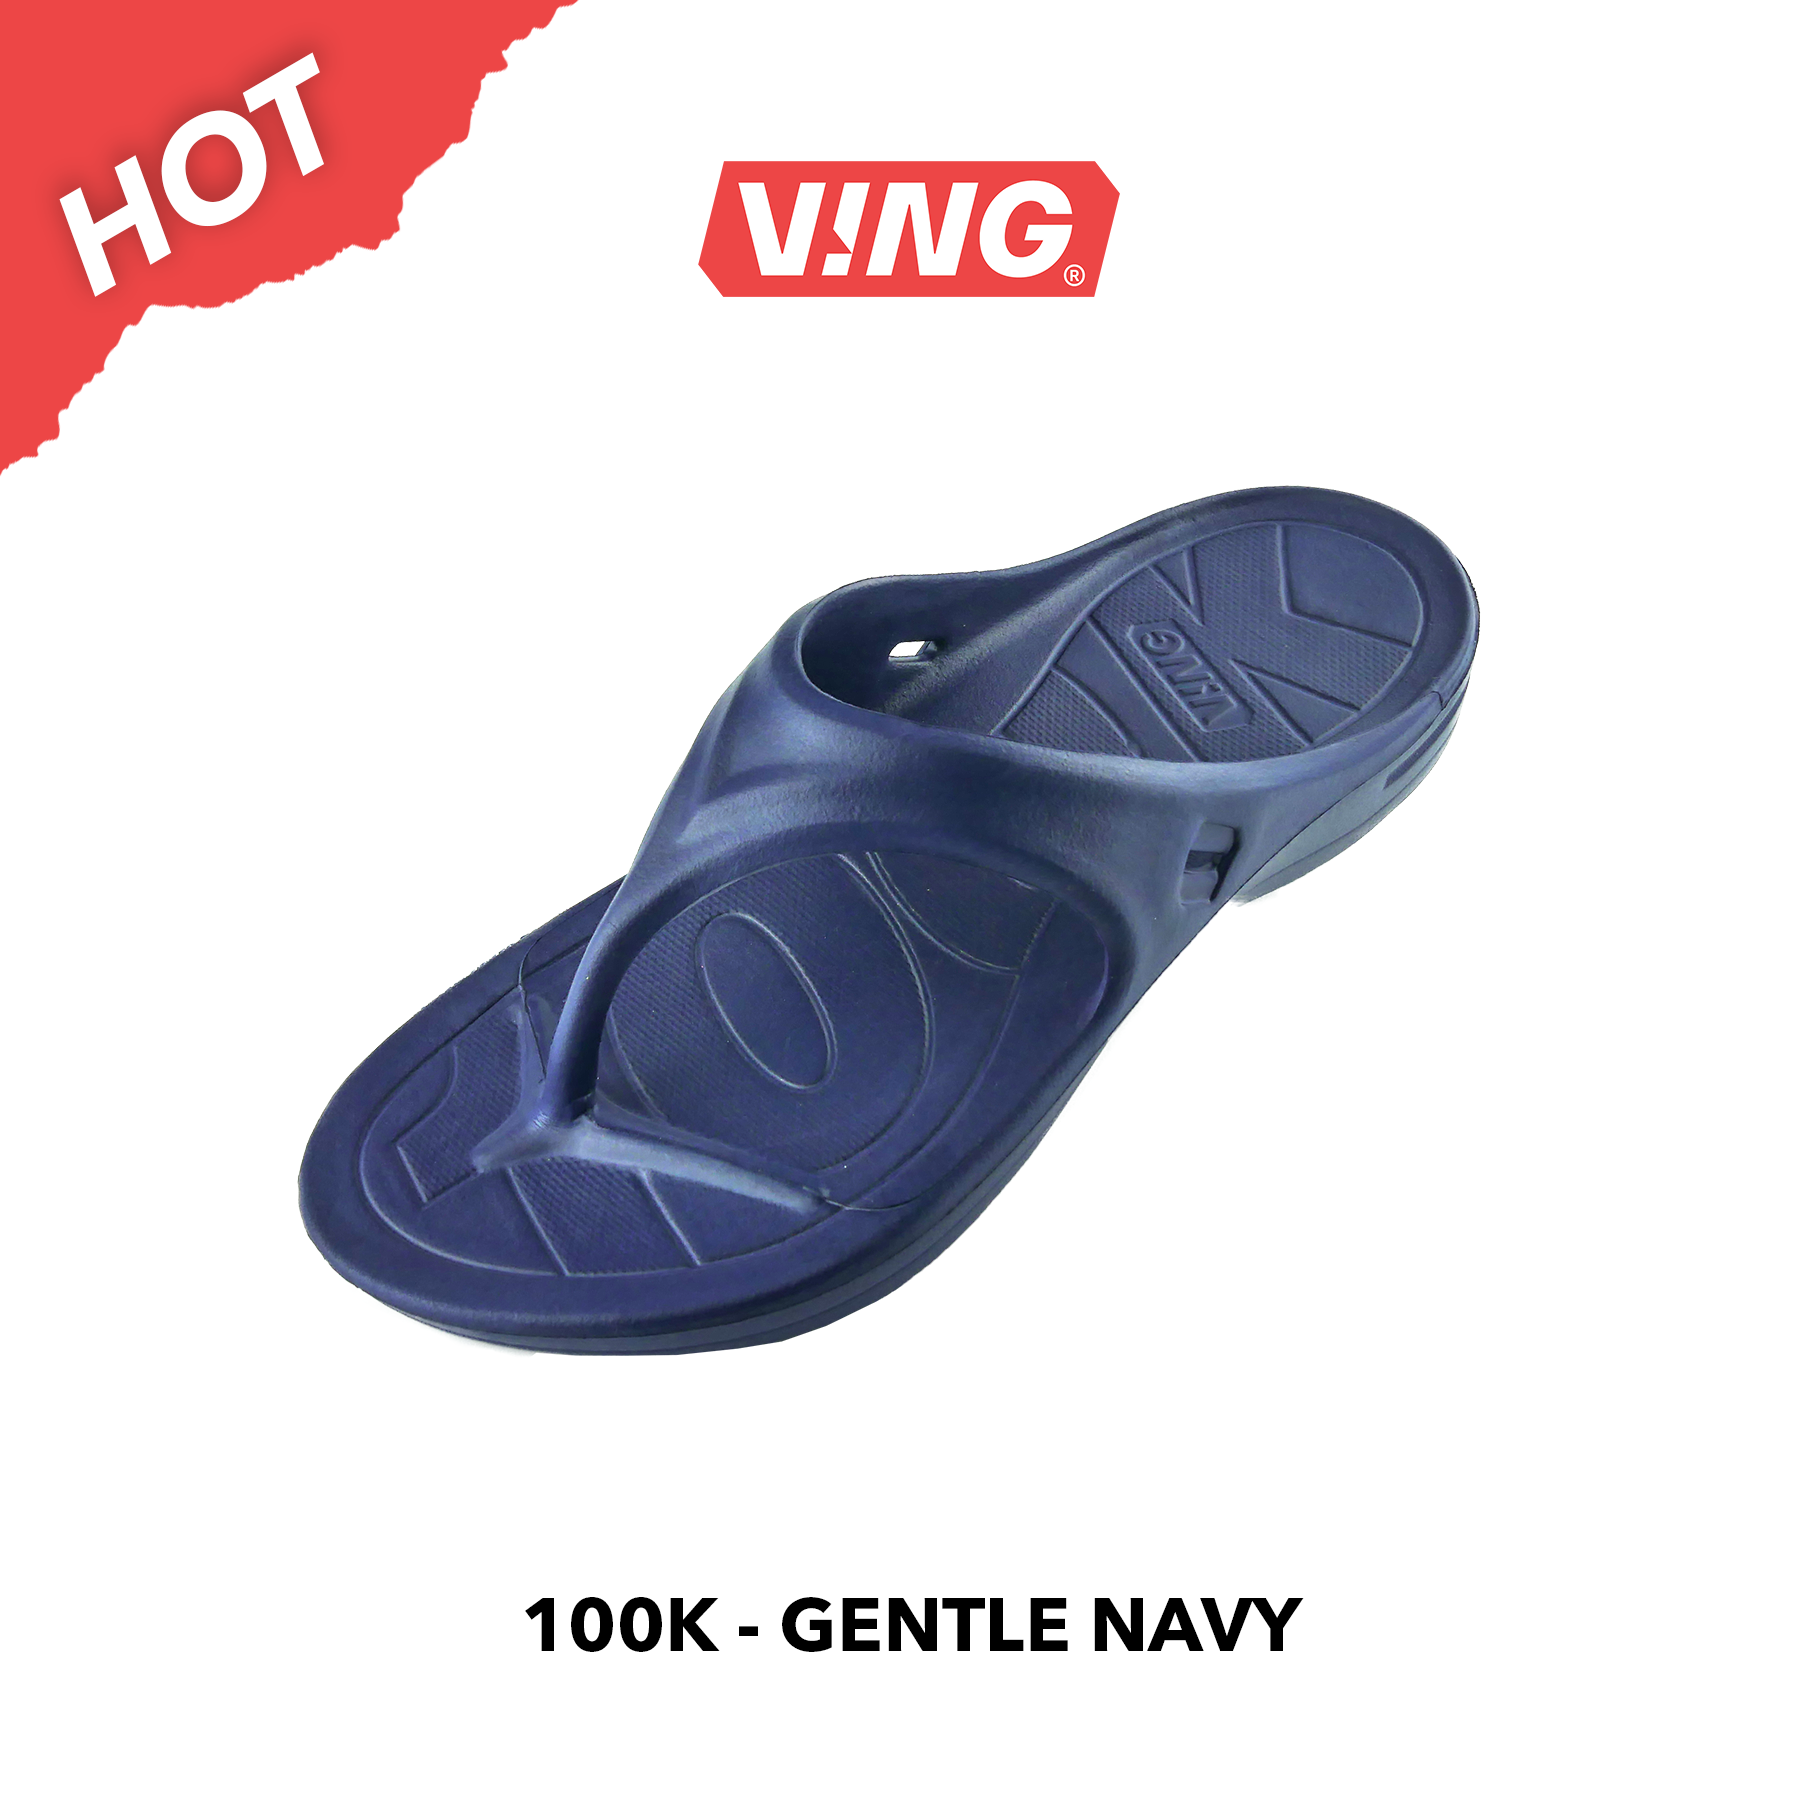 รองเท้าแตะวิ่งมาราธอน VING รุ่น 100K - สีกรมท่า Gentle Navy (รวมสายรัดข้อเท้า เลือกสีได้) Running Sandals - รองเท้าแตะสุขภาพ [ส่งฟรี]